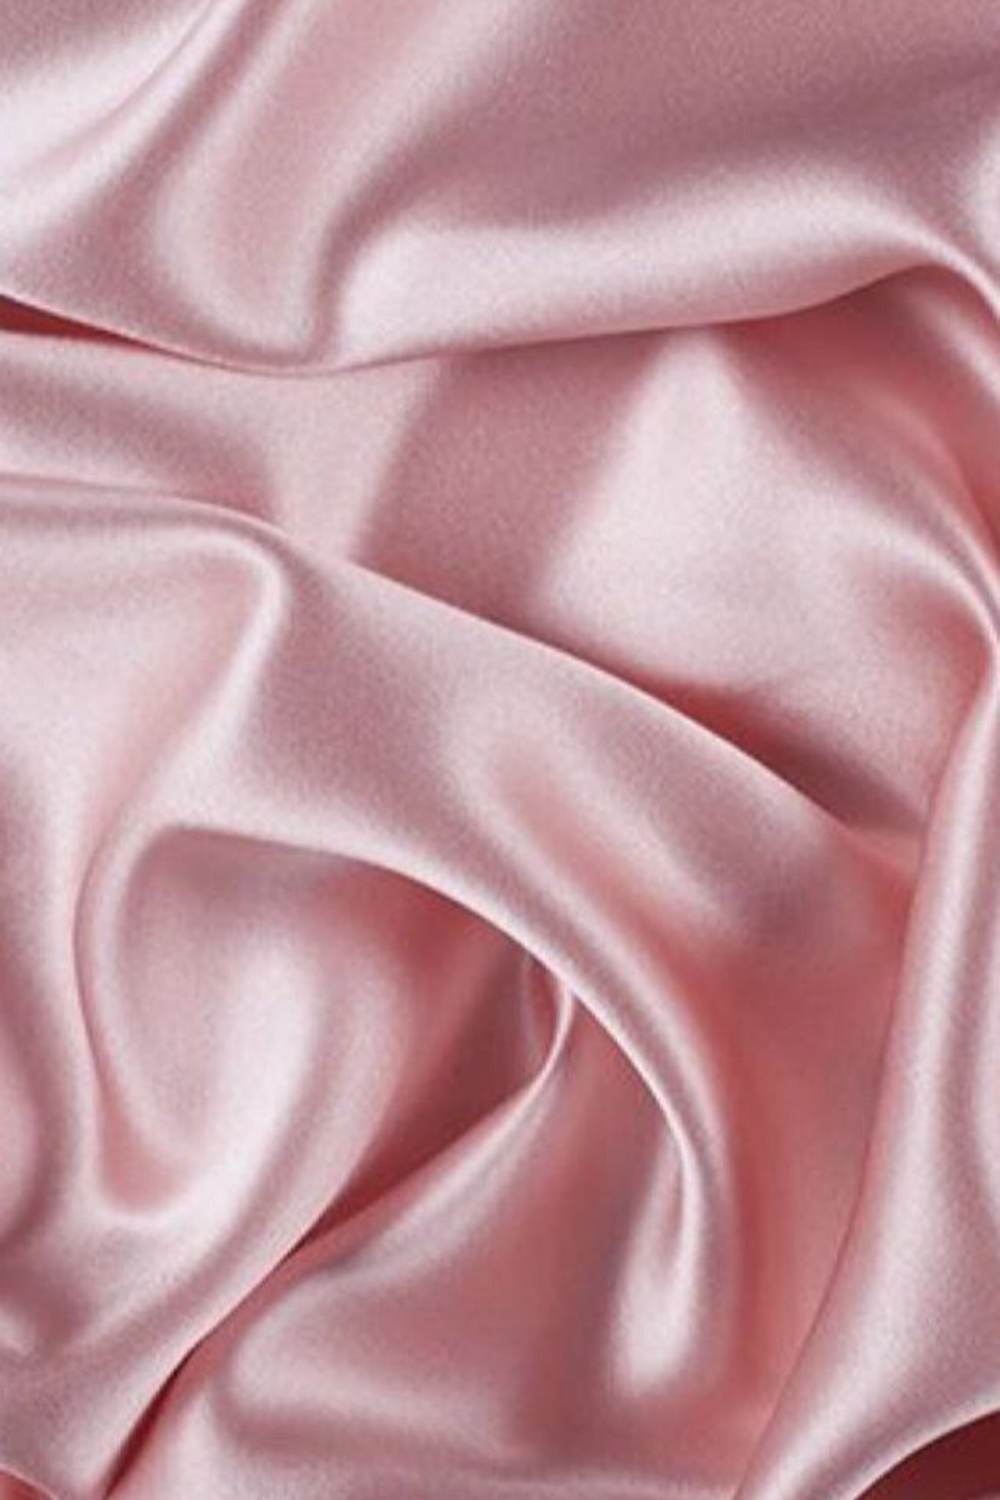 Hãy xem những hình nền giấy dán tường vải lụa hồng này và sẽ chứng kiến sức mạnh của màu hồng. Sử dụng những hình ảnh này để trang trí ngôi nhà của bạn thêm phần ấm áp, dịu dàng và sang trọng.